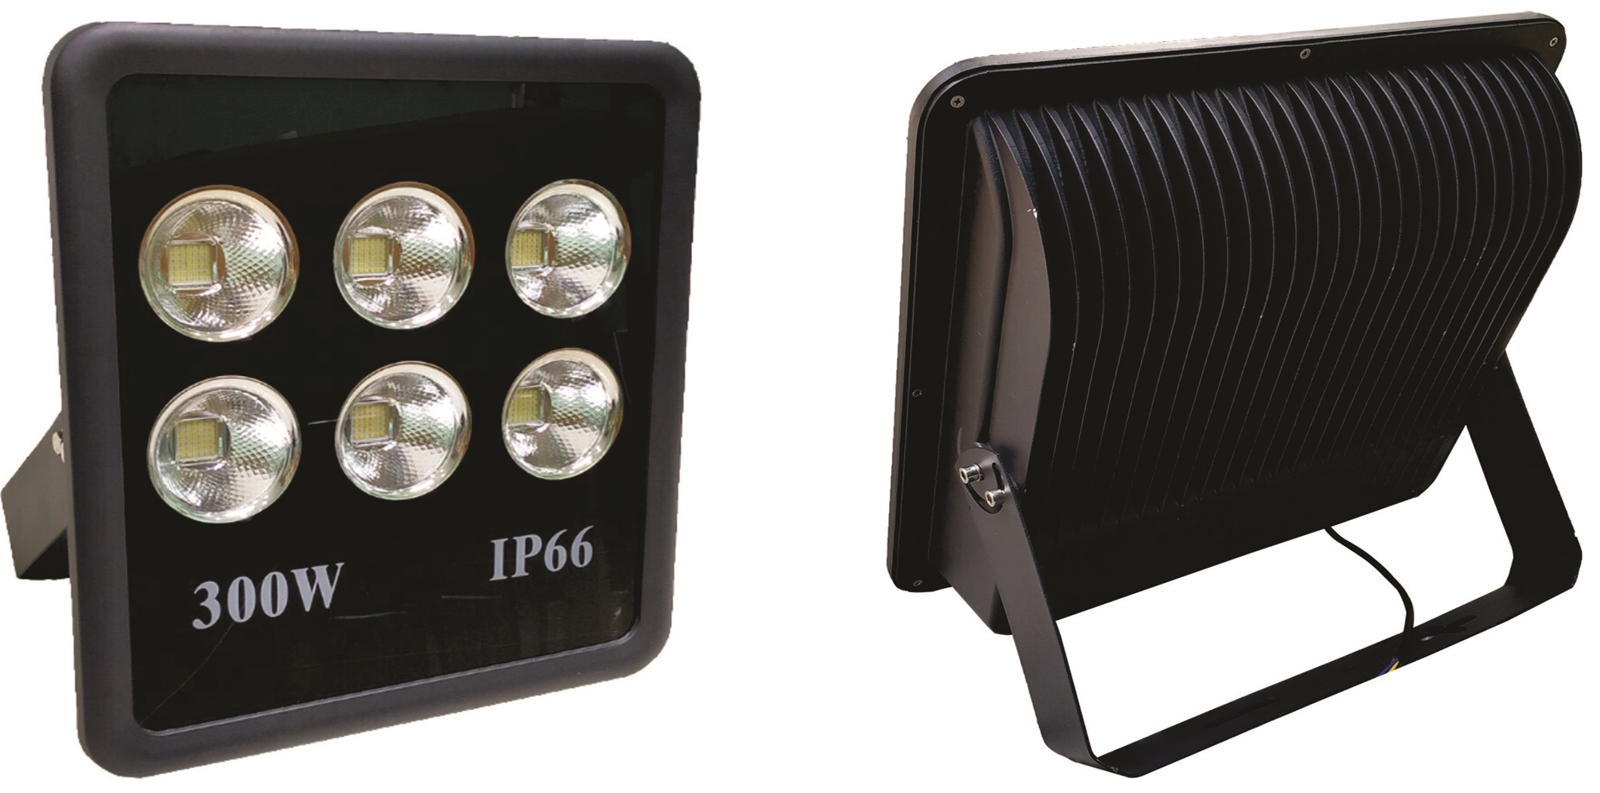 Hình ảnh đèn pha 300w IP66 chống nước